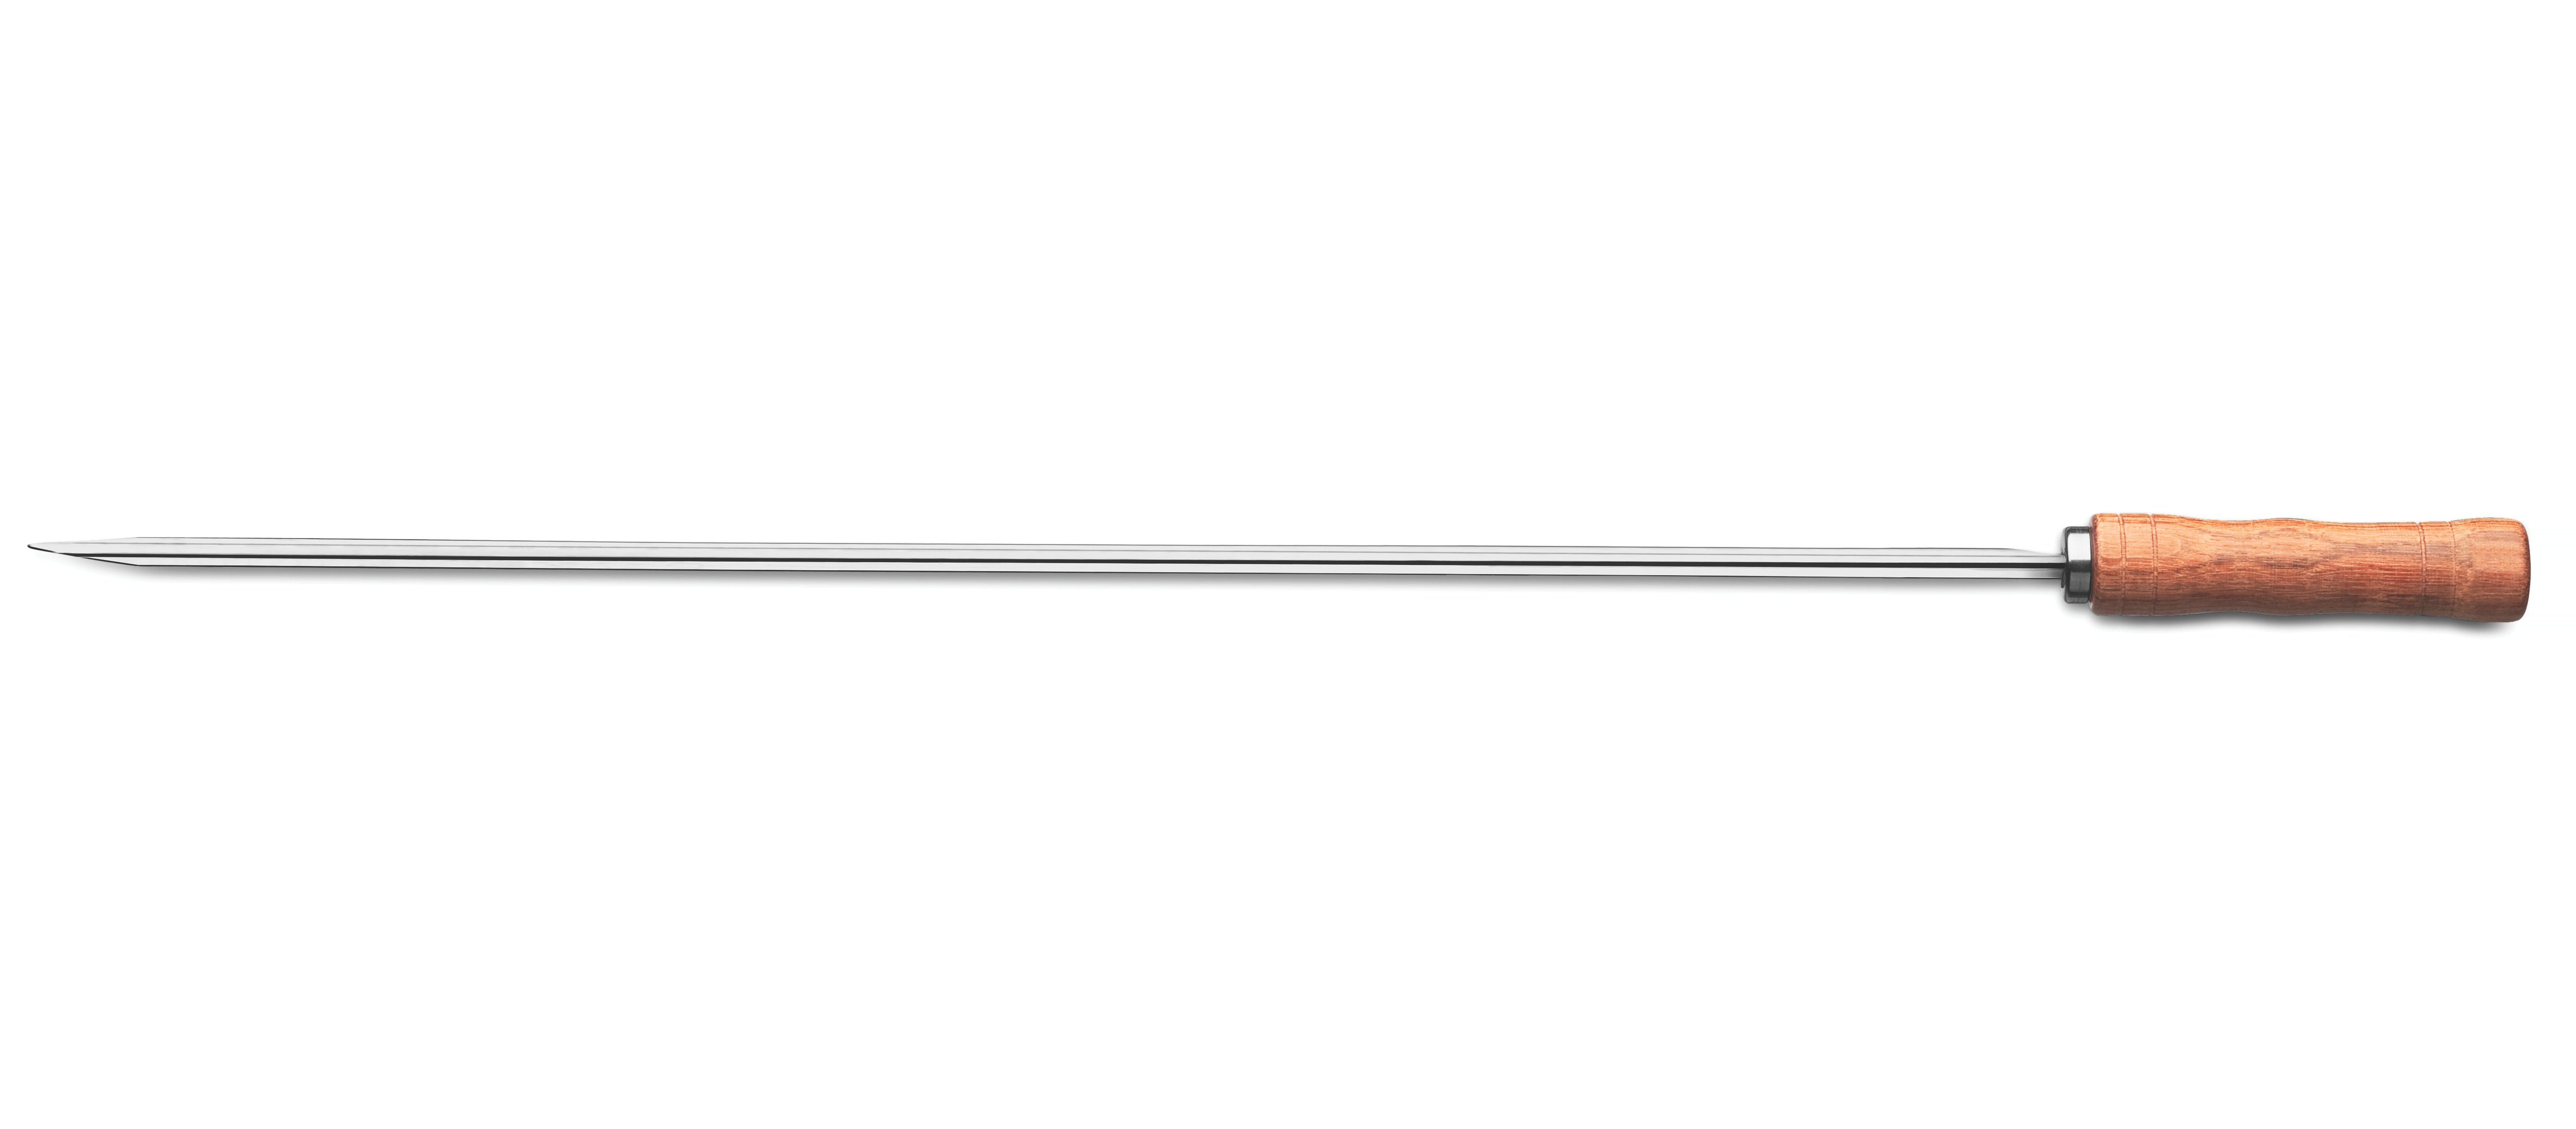 Tramontina Grillspieß CHURRASCO 10 mm, rostfrei (1-St), Edelstahl, Griff aus Hartholz, spezielles V-Profil für Stabilität